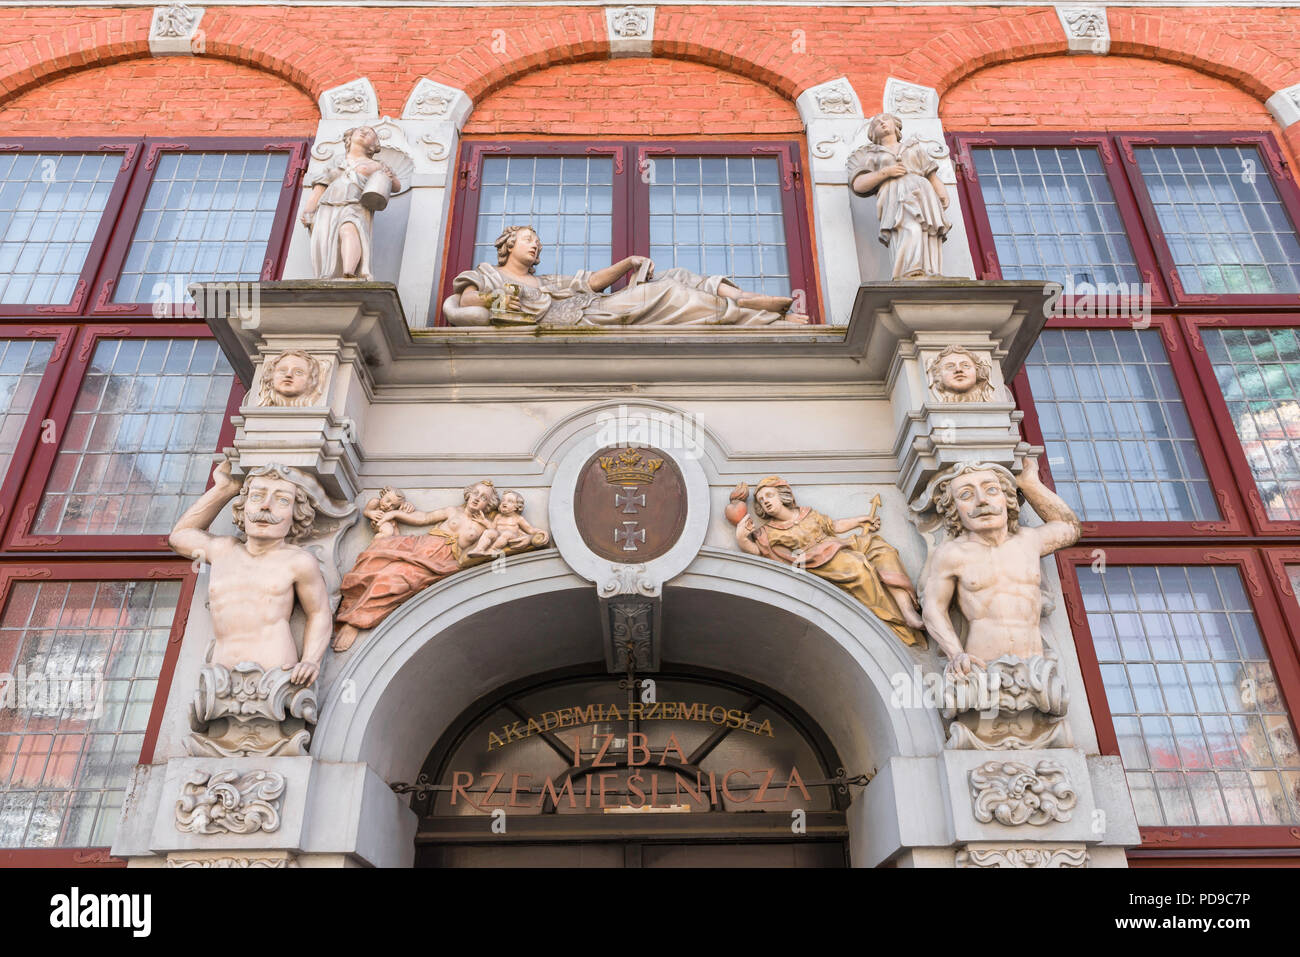 Avis de sculptures baroques qui décorent l'entrée de la chambre des métiers de Poméranie en bâtiment Gdansk Vieille Ville, occidentale, en Pologne. Banque D'Images